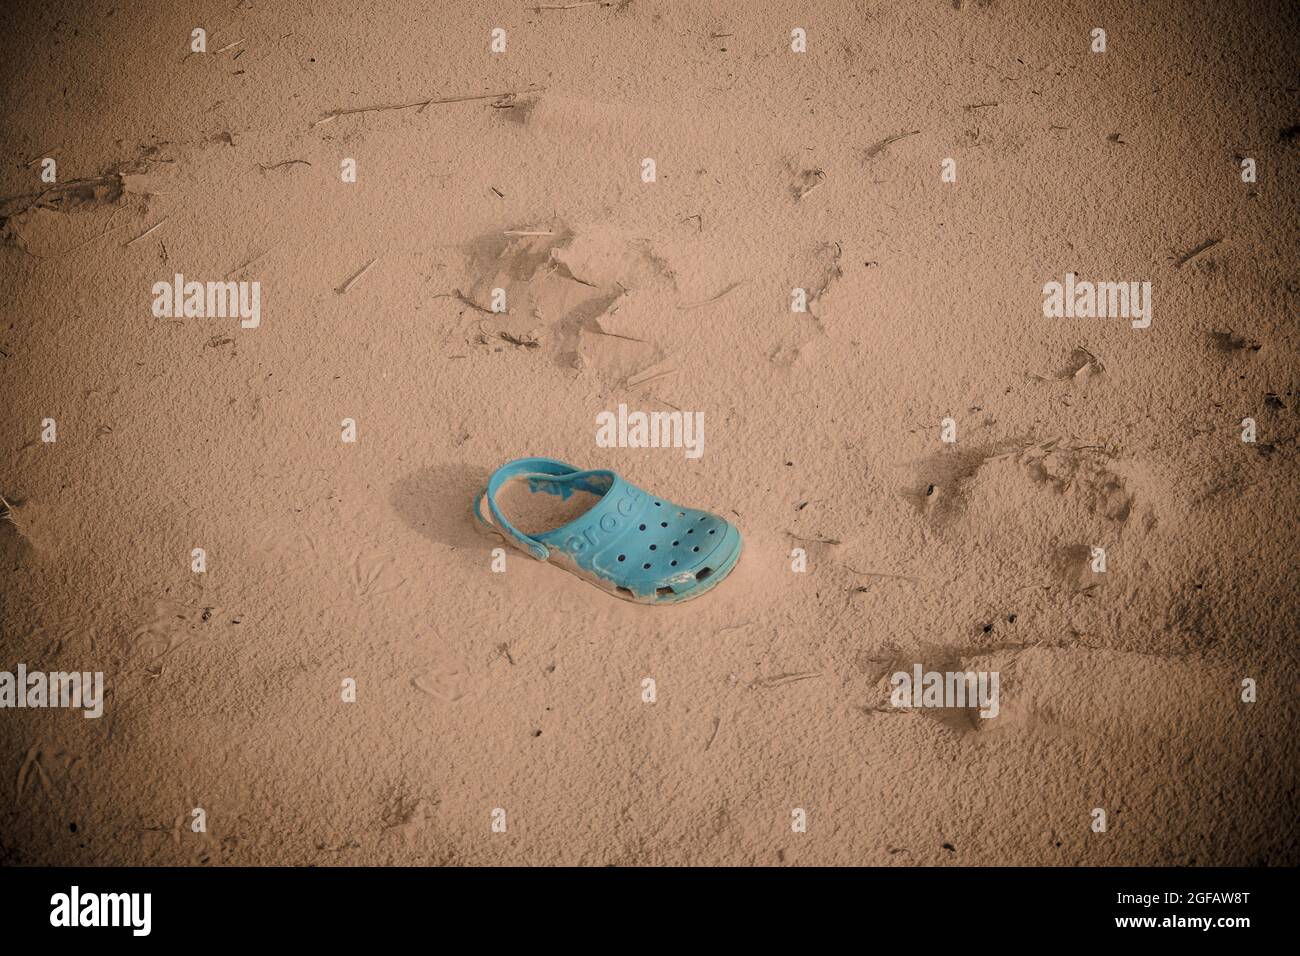 Groppa di coccodrillo turchese classico abbandonato sulle dune di sabbia. La scarpa color 'Digital acquaa' è parzialmente sepolta nella sabbia. Foto Stock